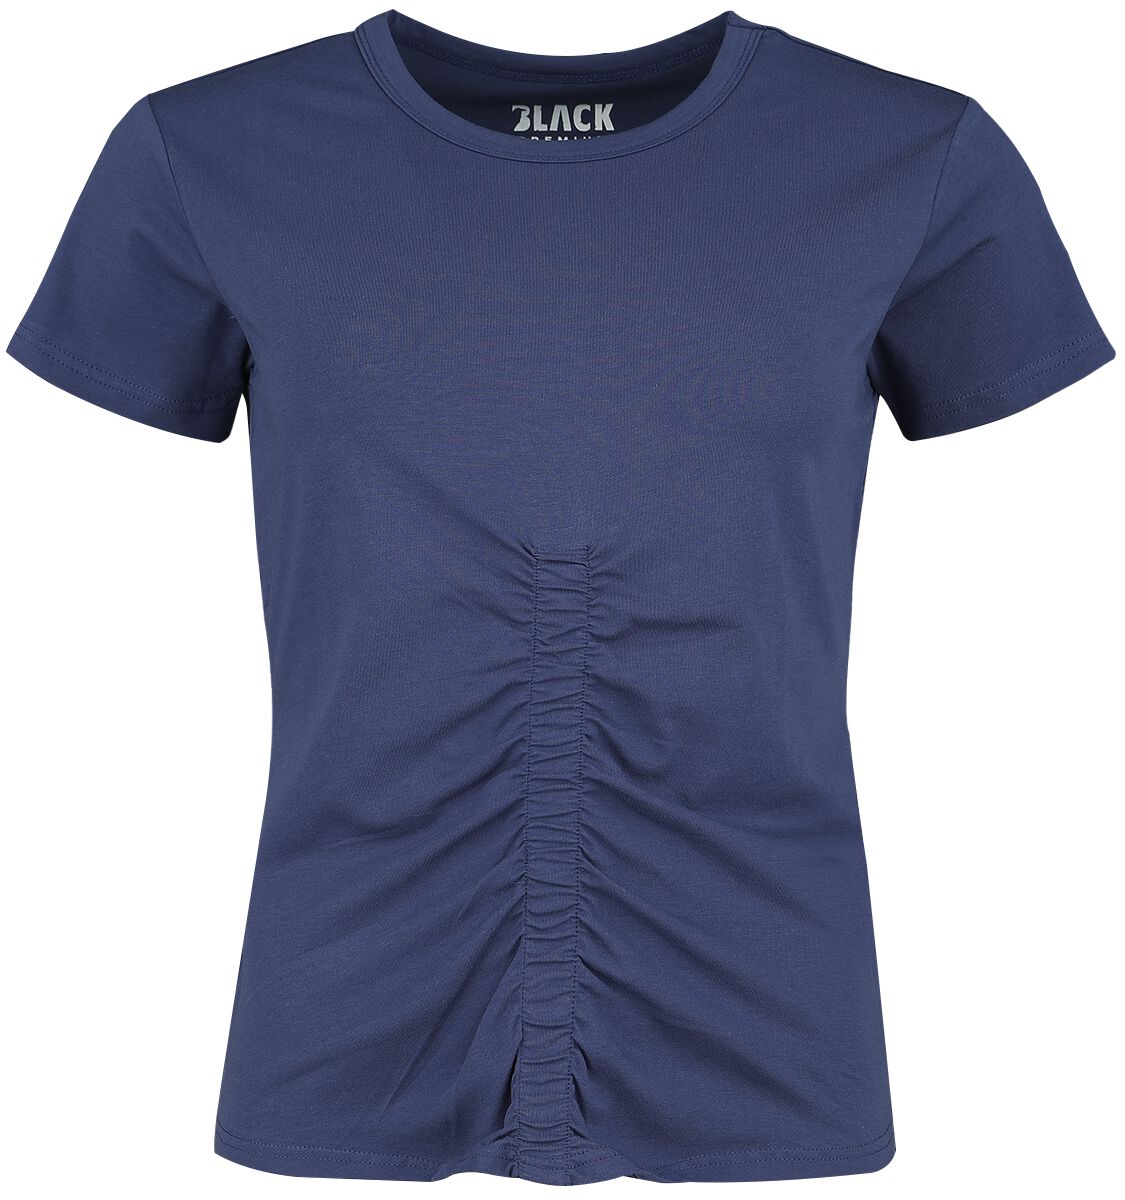 Black Premium by EMP - Blaues T-Shirt mit Raffung auf der Front - T-Shirt - blau - EMP Exklusiv!